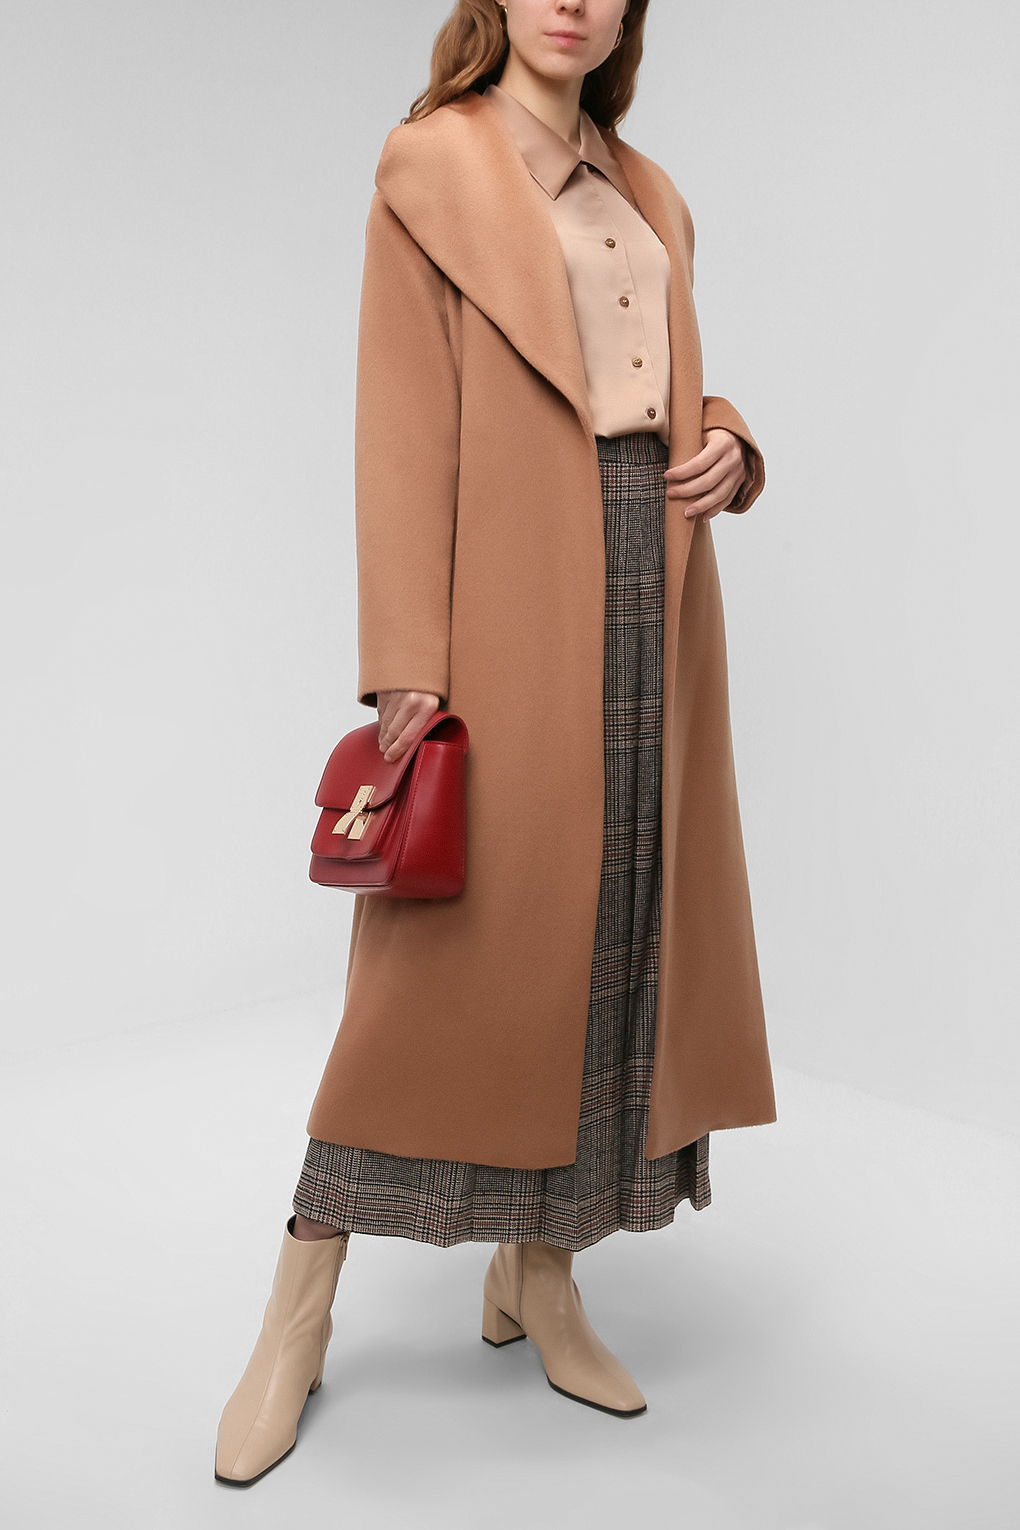 Пальто женское PAOLA RAY PR221-9040 коричневое S